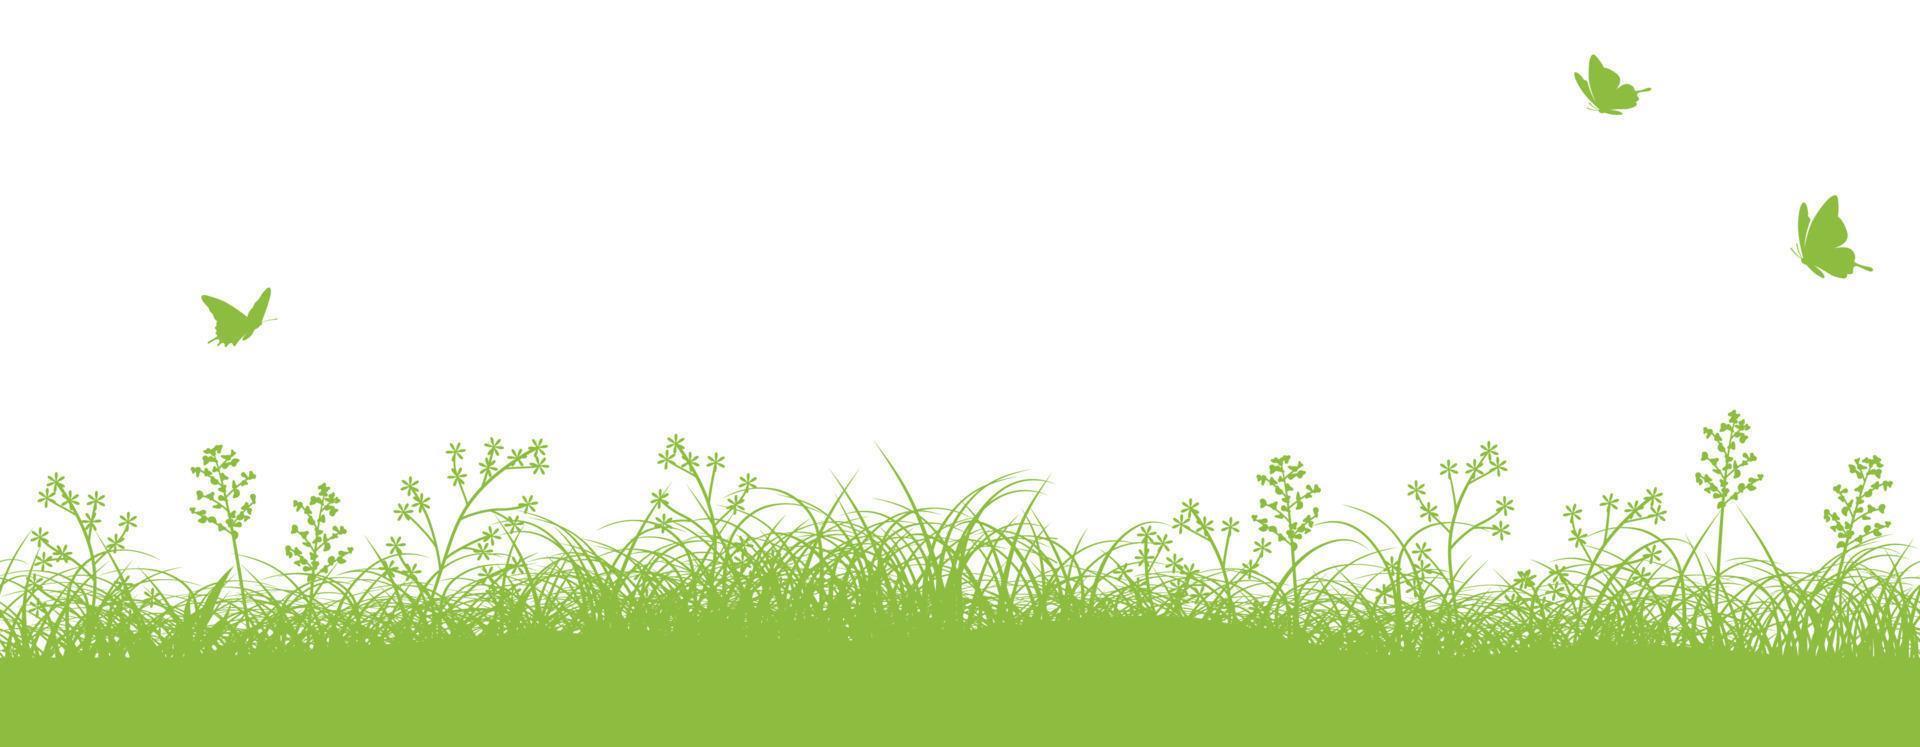 naadloos groen met gras begroeid veld- vector achtergrond illustratie met tekst ruimte. horizontaal herhaalbaar.